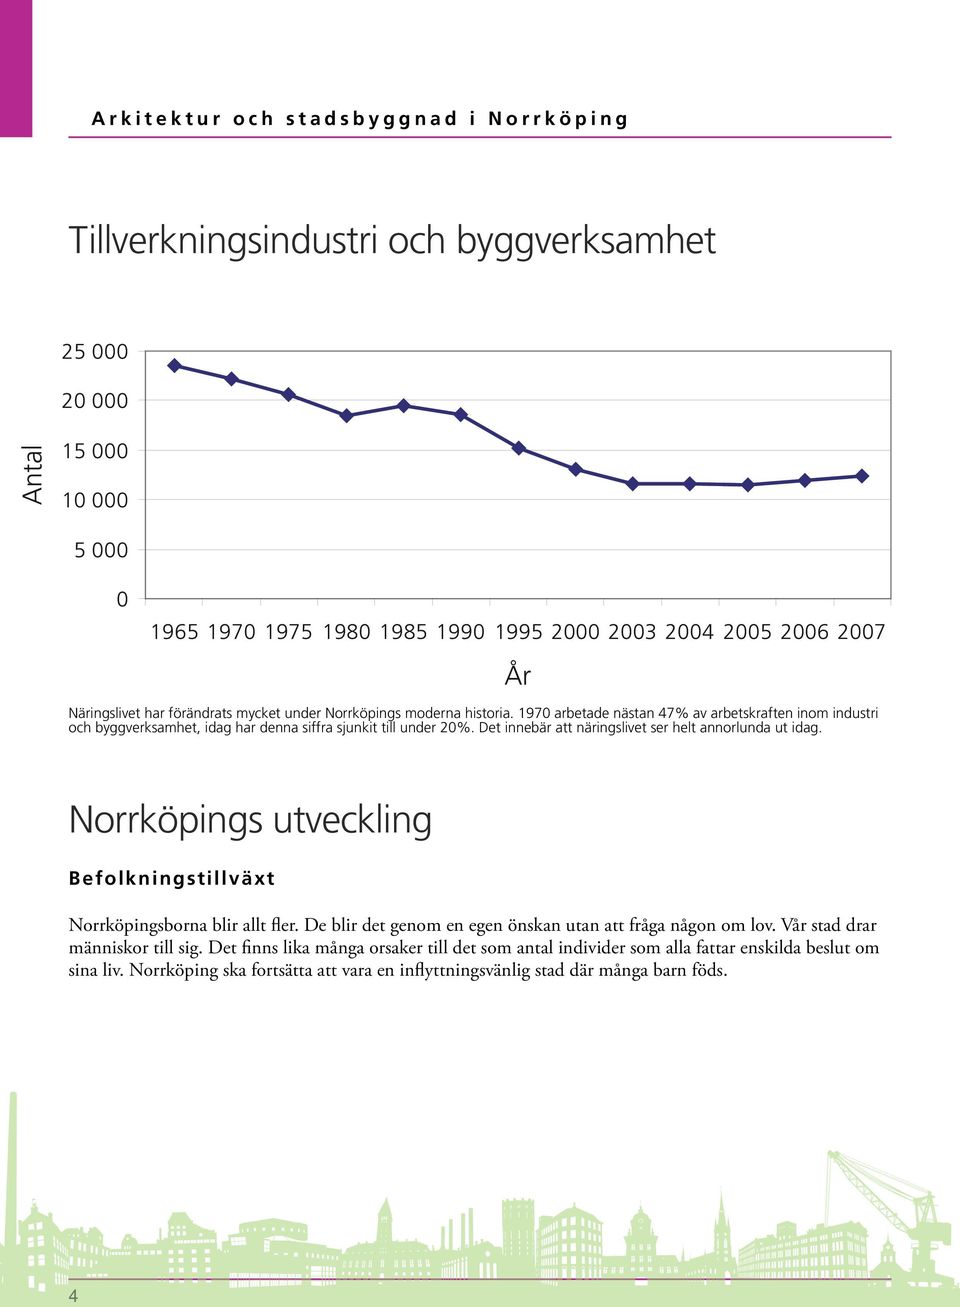 Det innebär att näringslivet ser helt annorlunda ut idag. Norrköpings utveckling Befolkningstillväxt Norrköpingsborna blir allt fler. De blir det genom en egen önskan utan att fråga någon om lov.